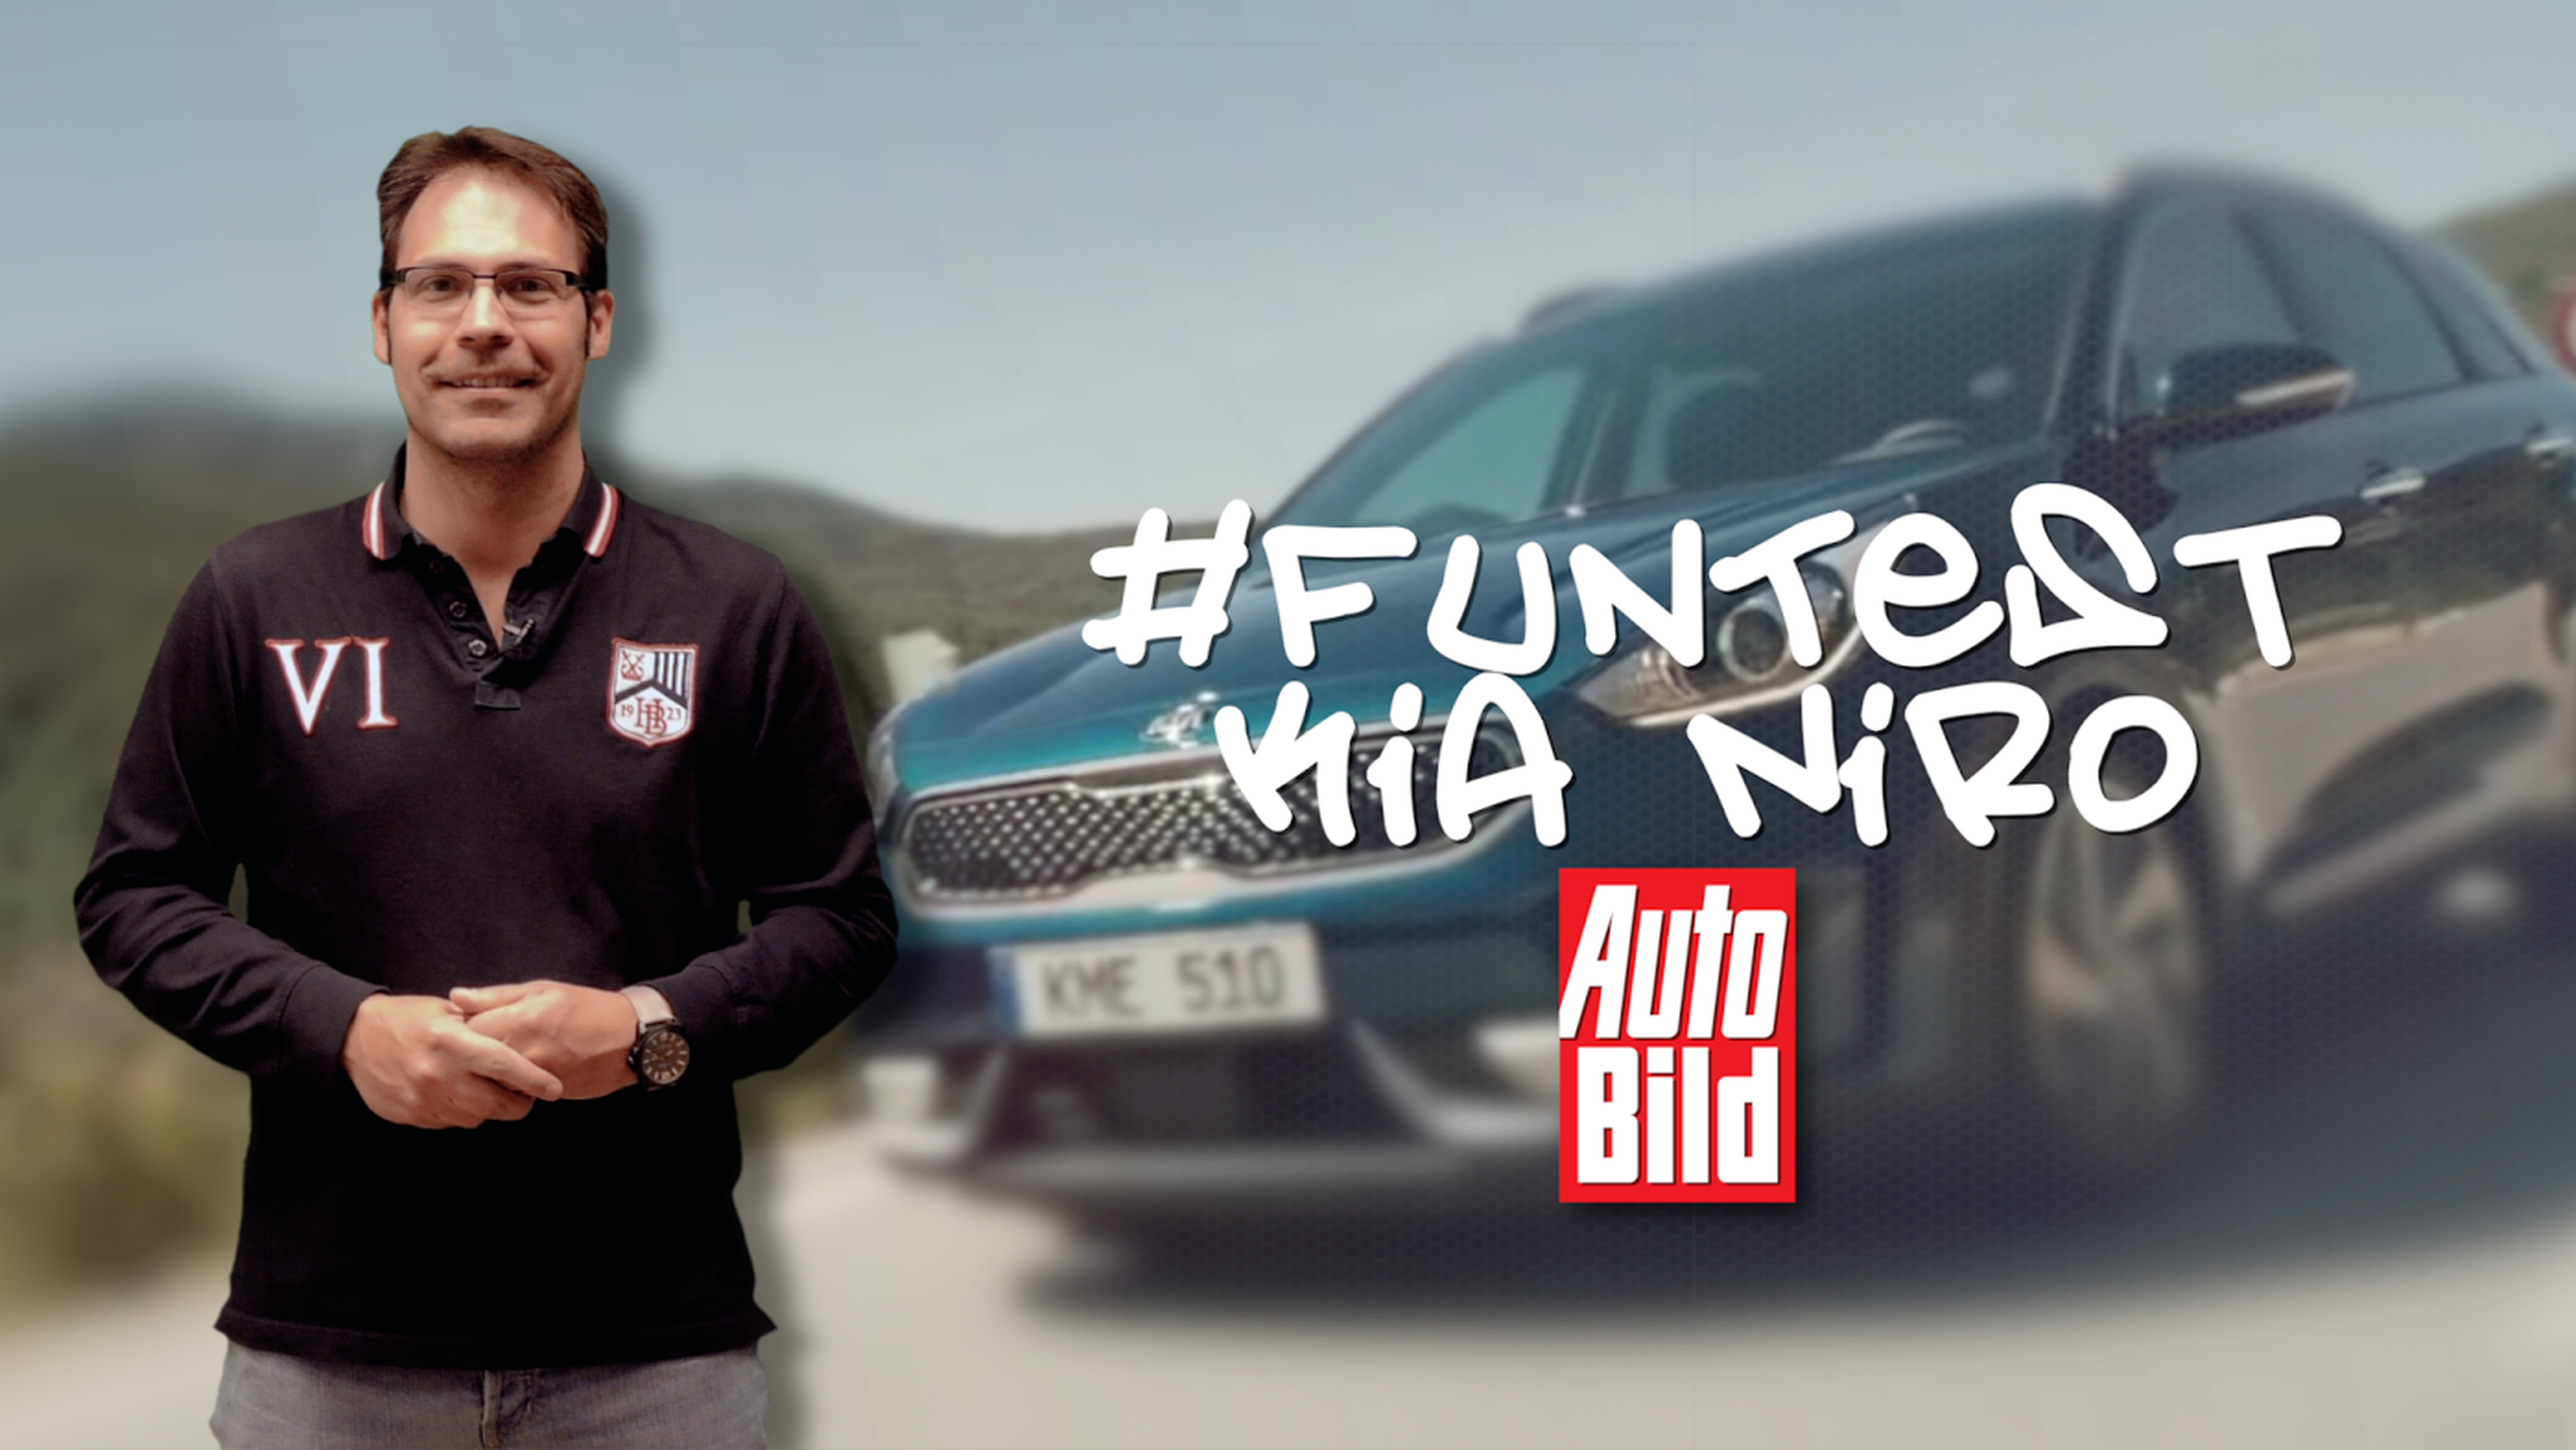 ¿Quieres participar en el #FunTest de KIA Niro y Auto Bild?